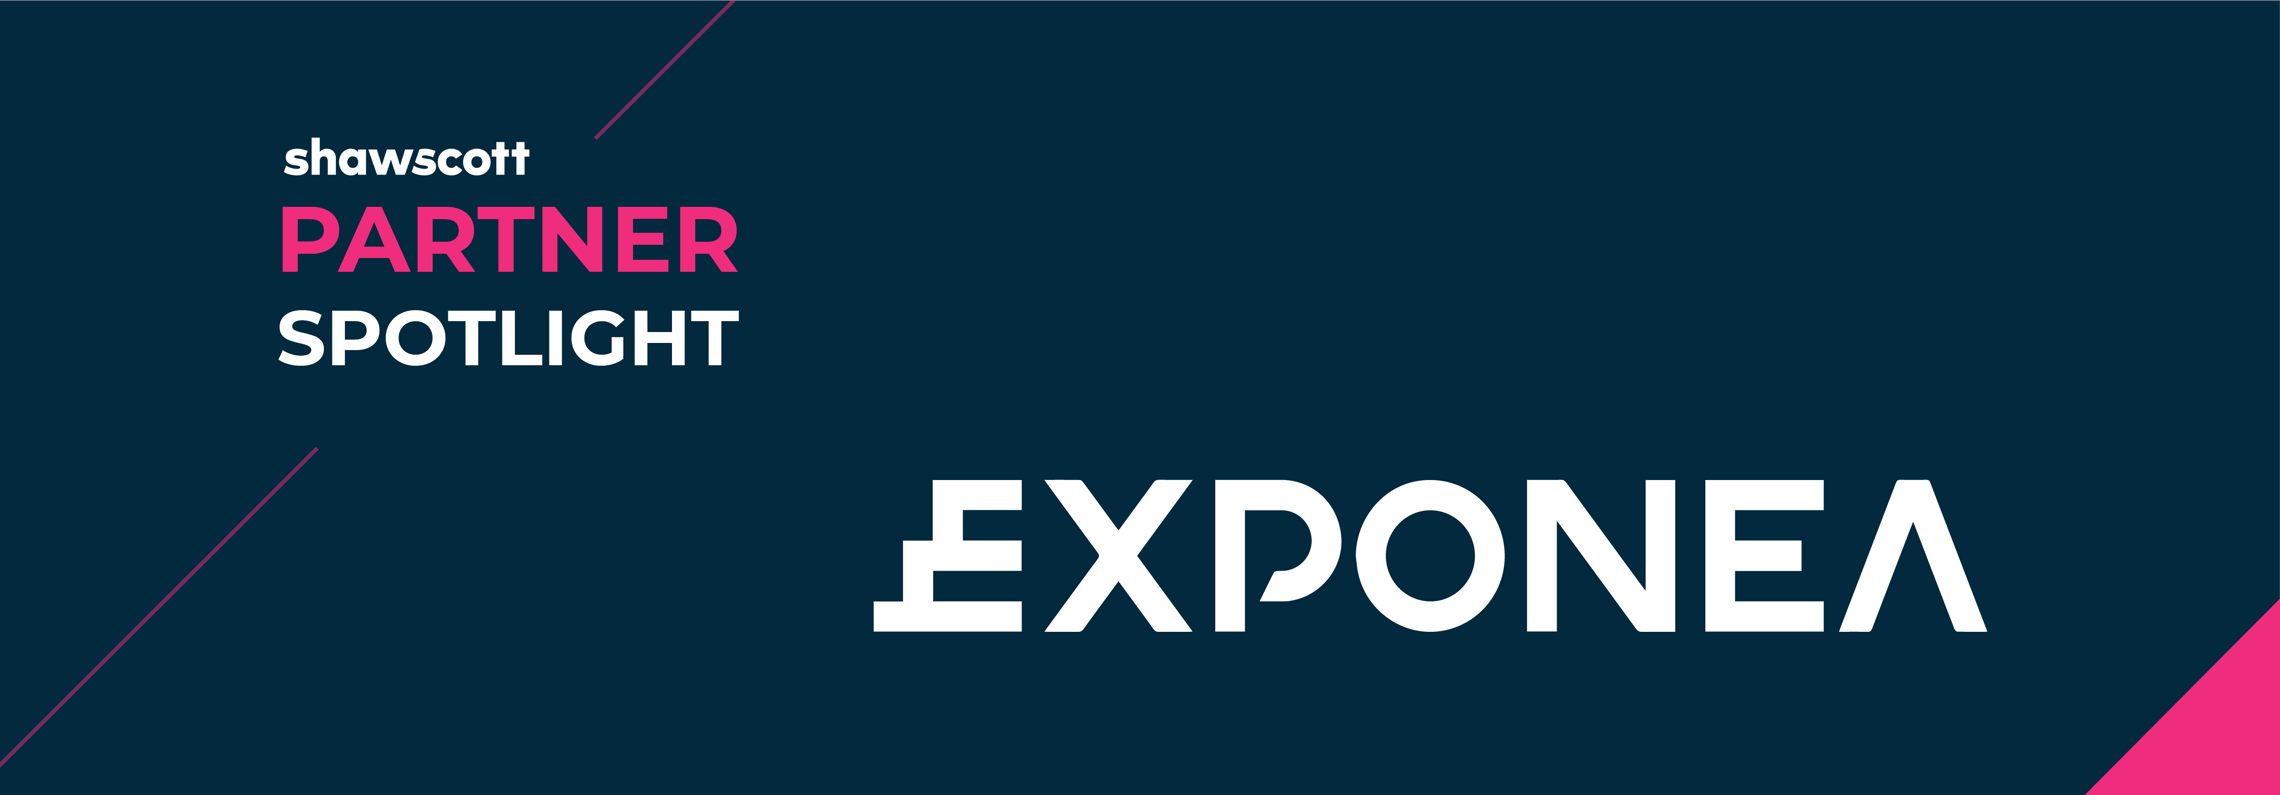 Partner Spotlight - Exponea